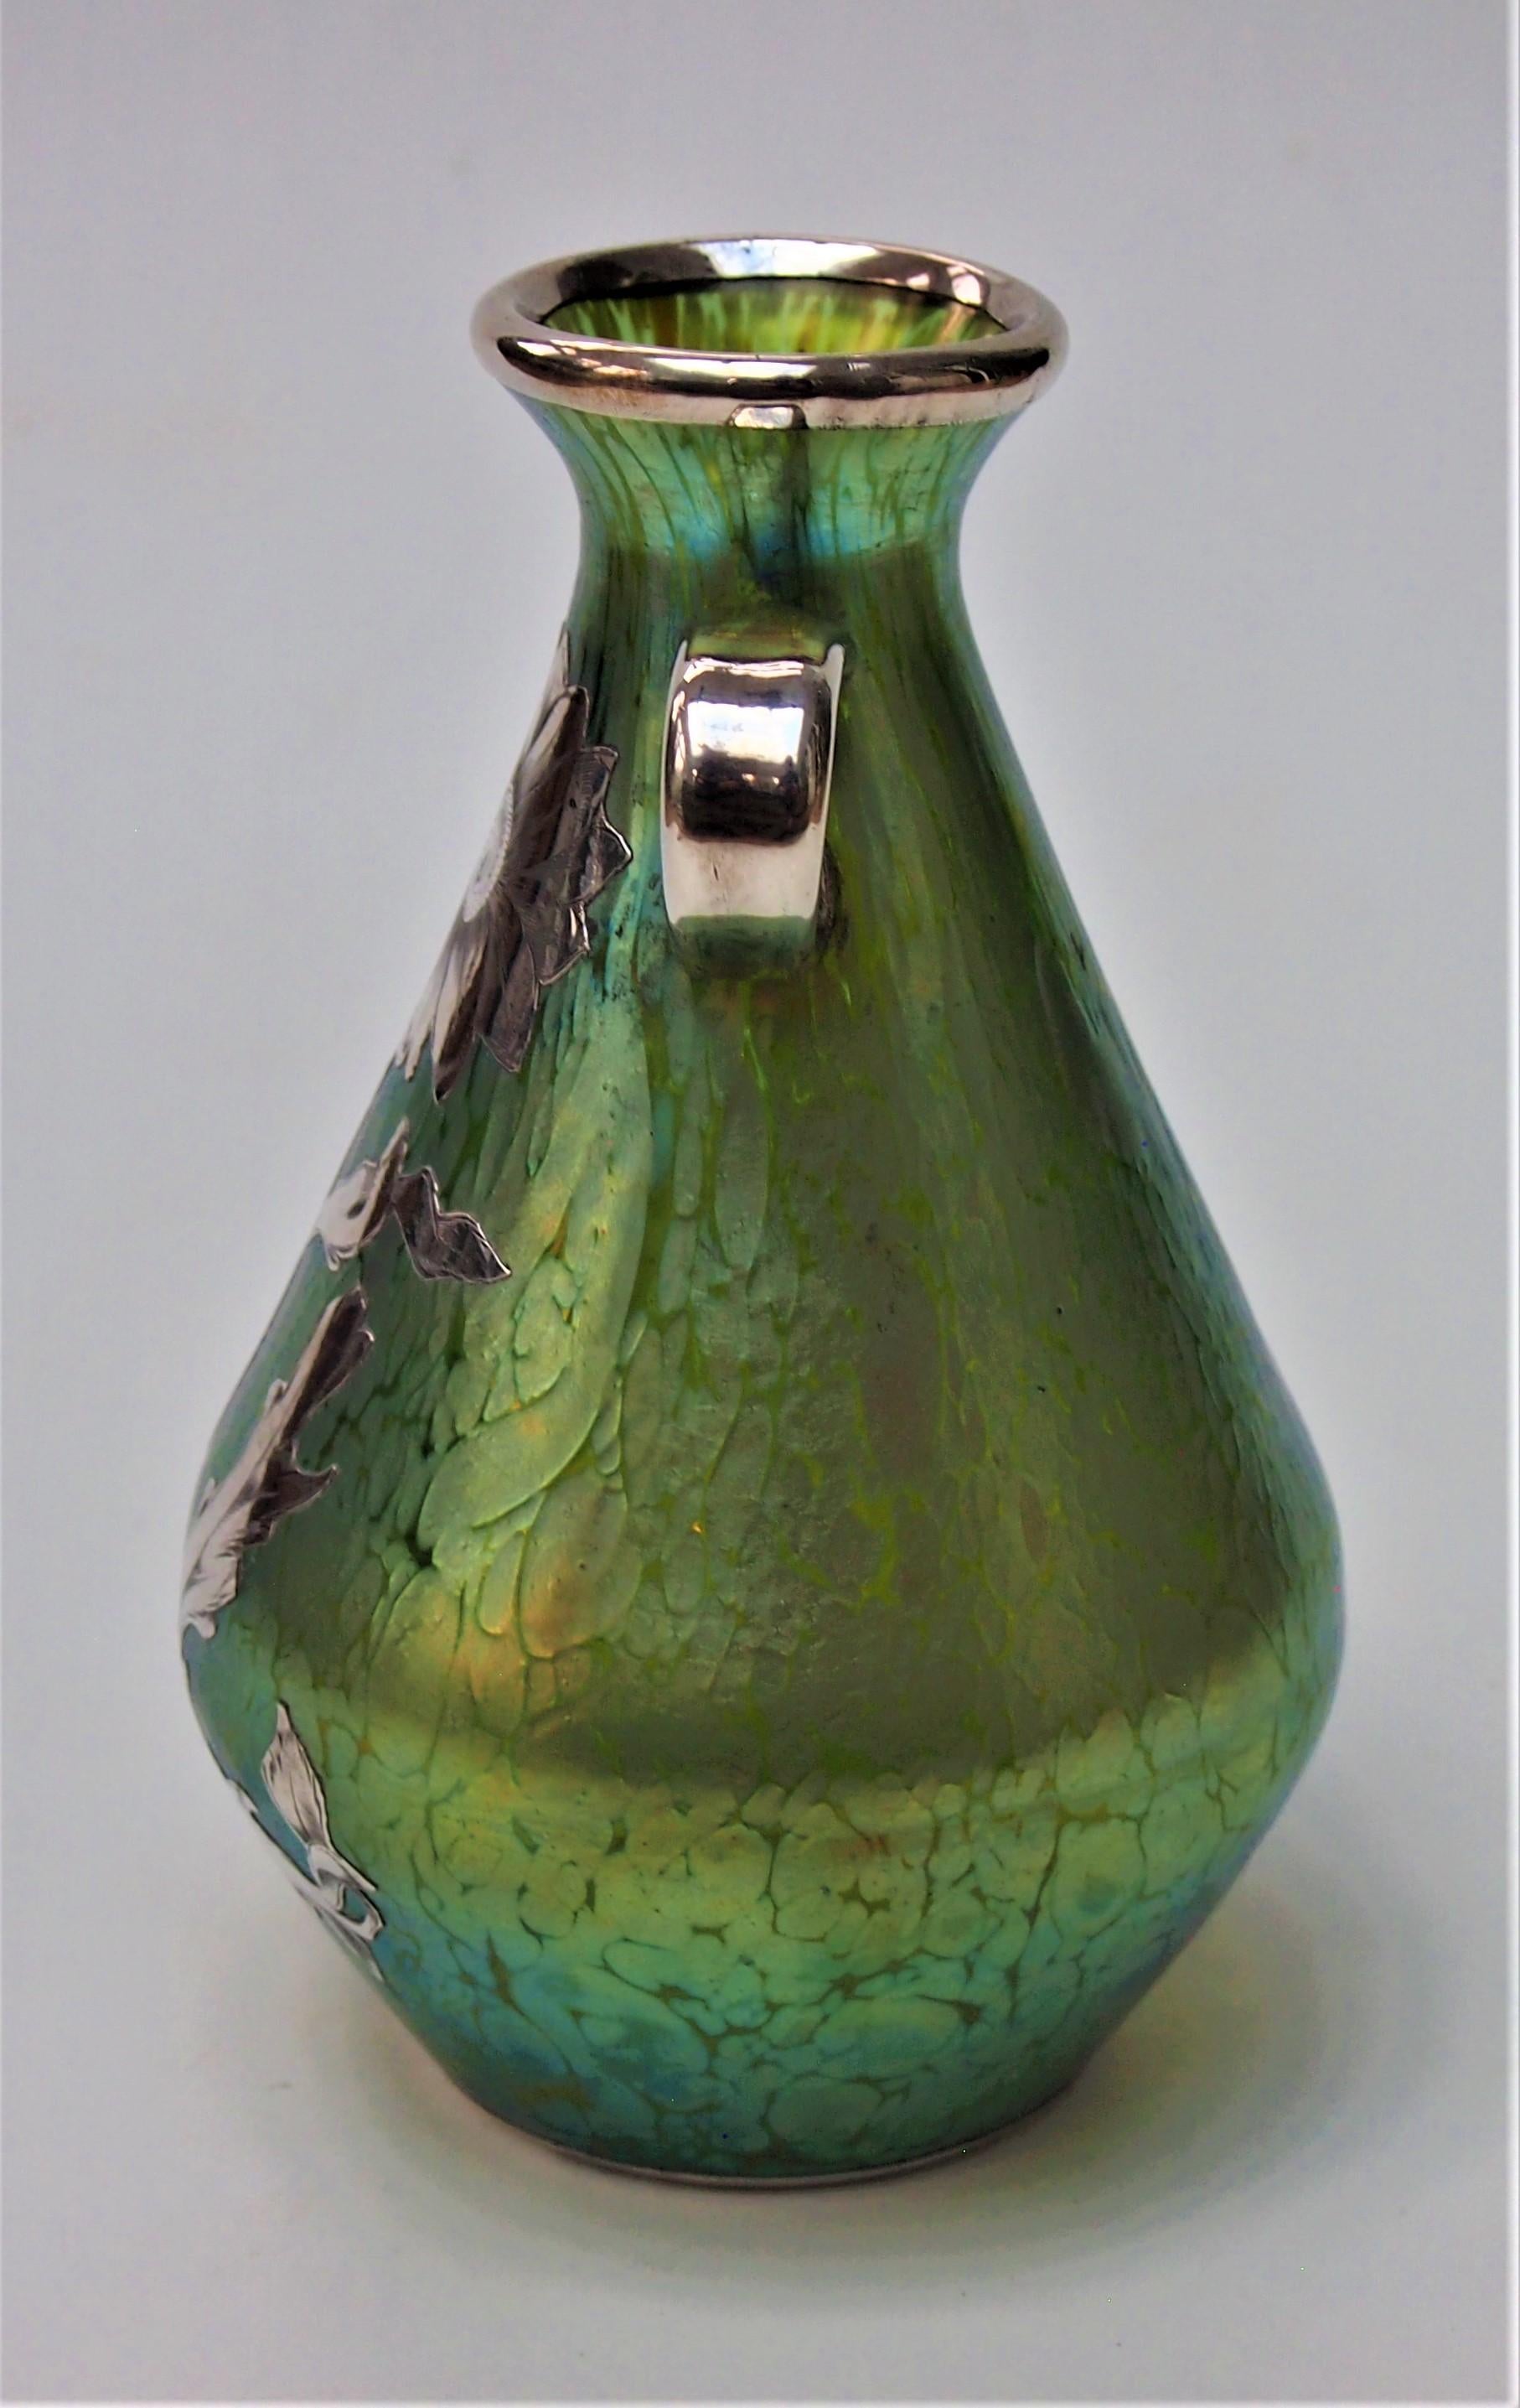 Un fabuleux vase Art Nouveau Loetz 'Crete' (bleu/or sur vert) Papillon (aile de papillon) avec des poignées appliquées et une fine couche d'argent. Cette finition irisée a été créée pour la première fois par Loetz en 1898 et cet exemplaire en est un